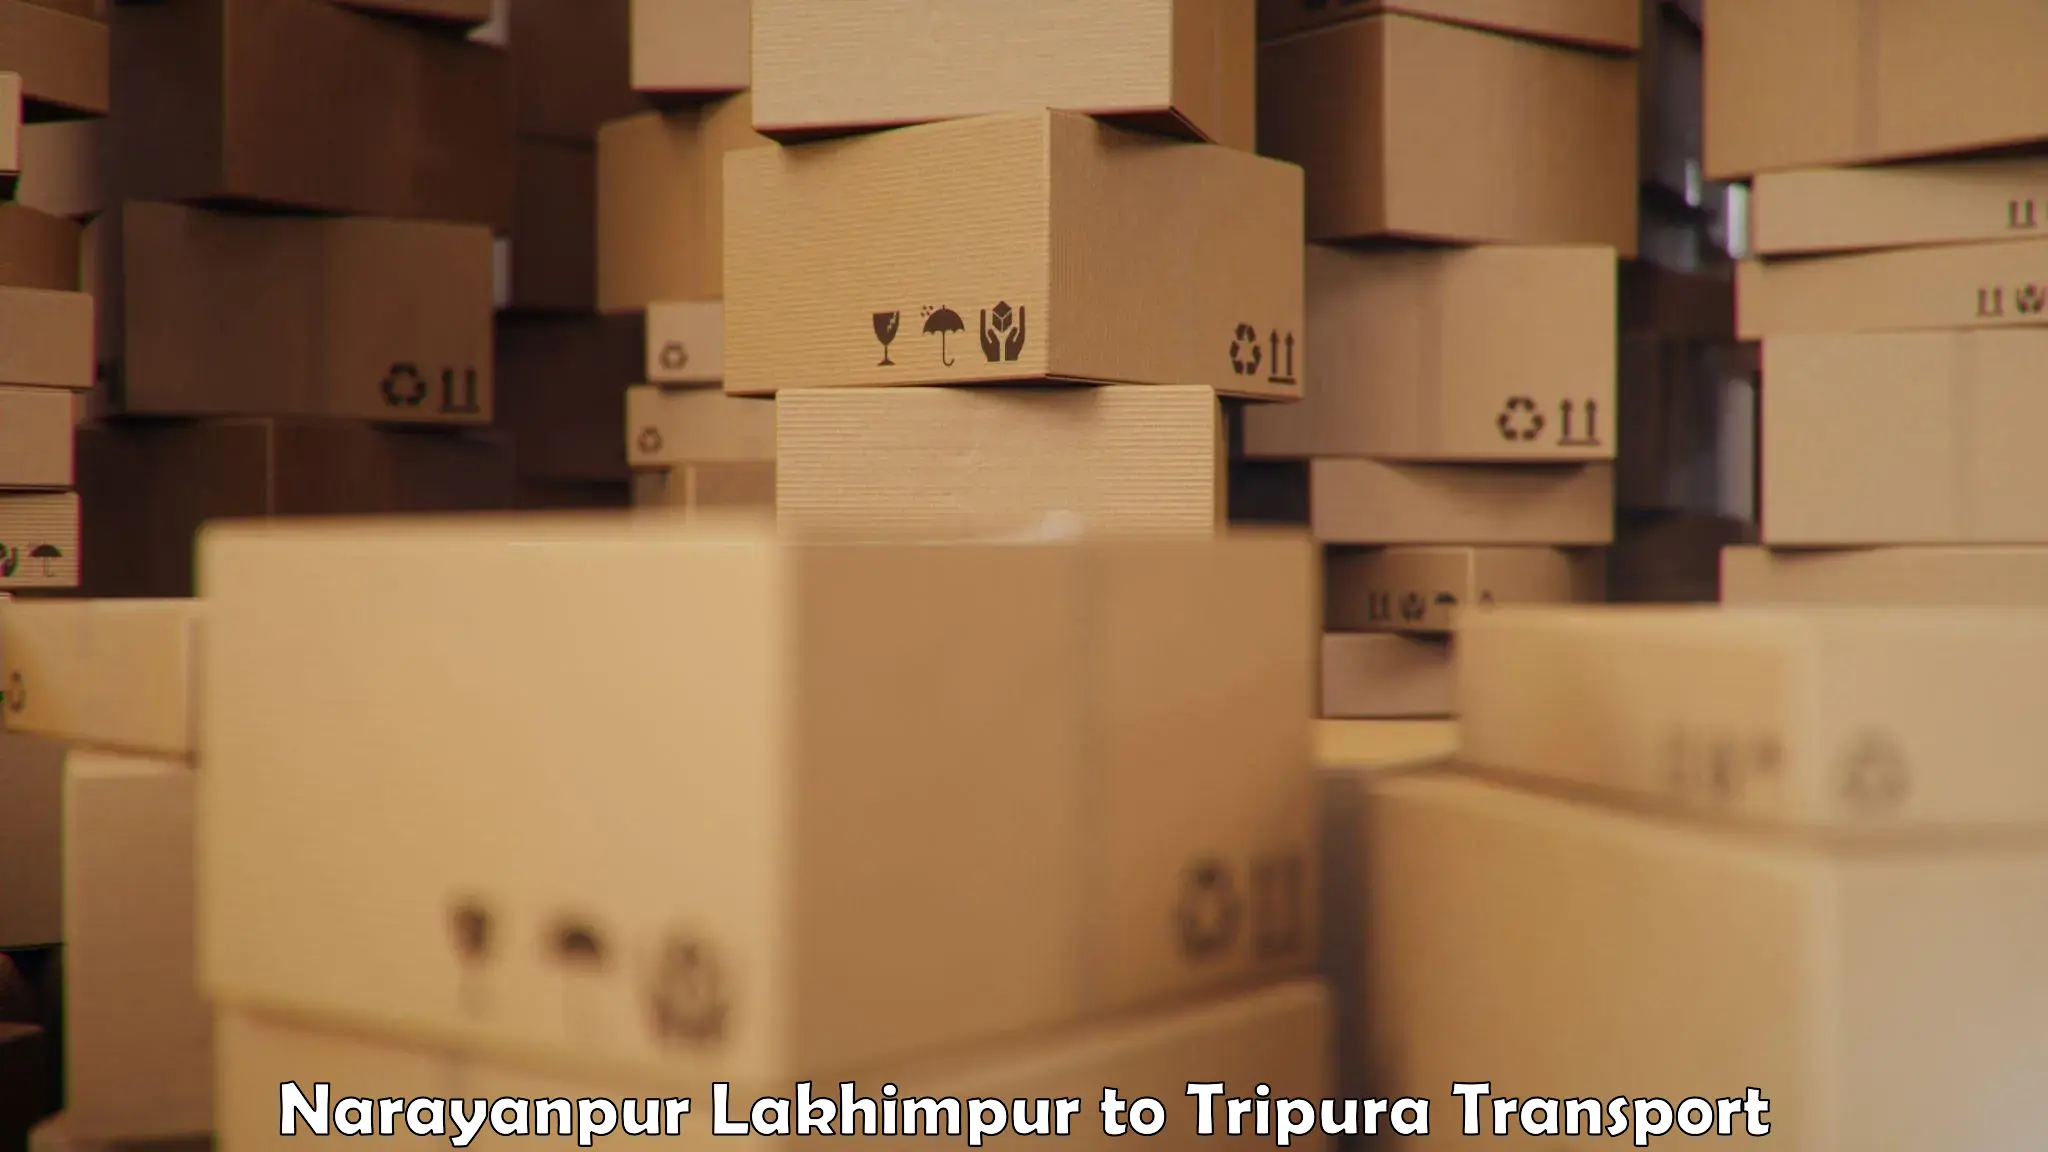 Shipping partner Narayanpur Lakhimpur to West Tripura